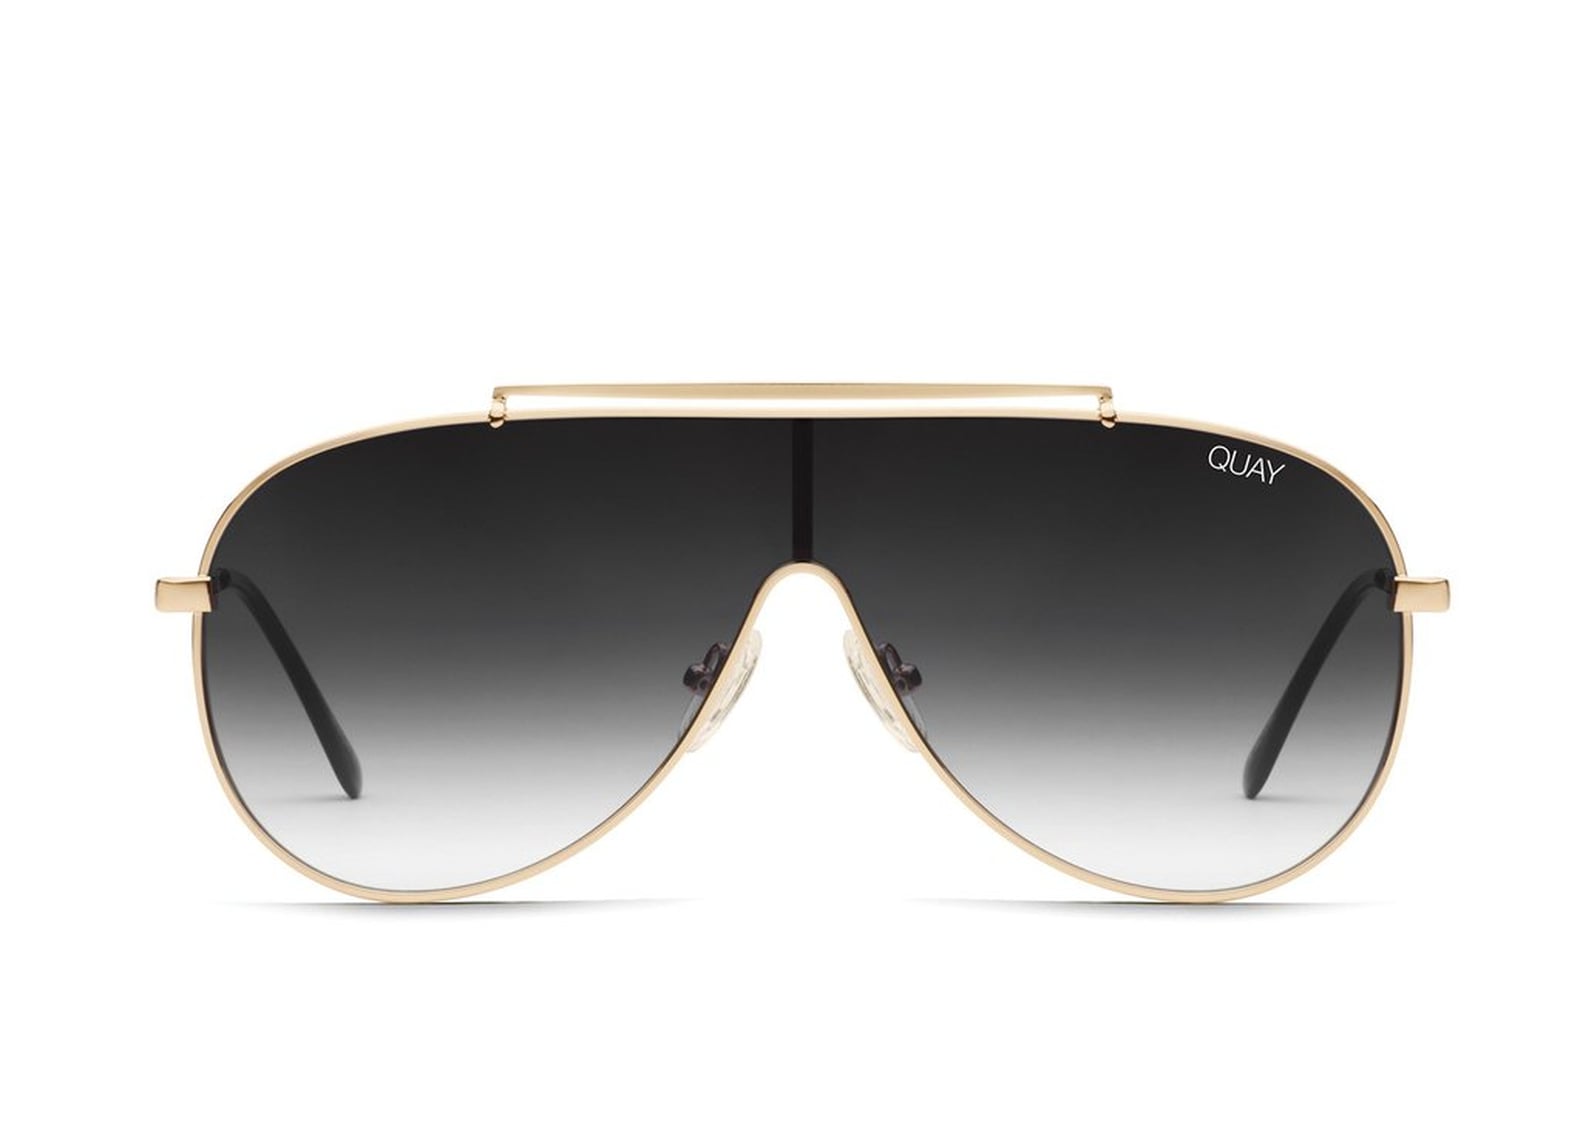 Jennifer Lopez and Alex Rodriguez Quay Sunglasses Collection | POPSUGAR ...